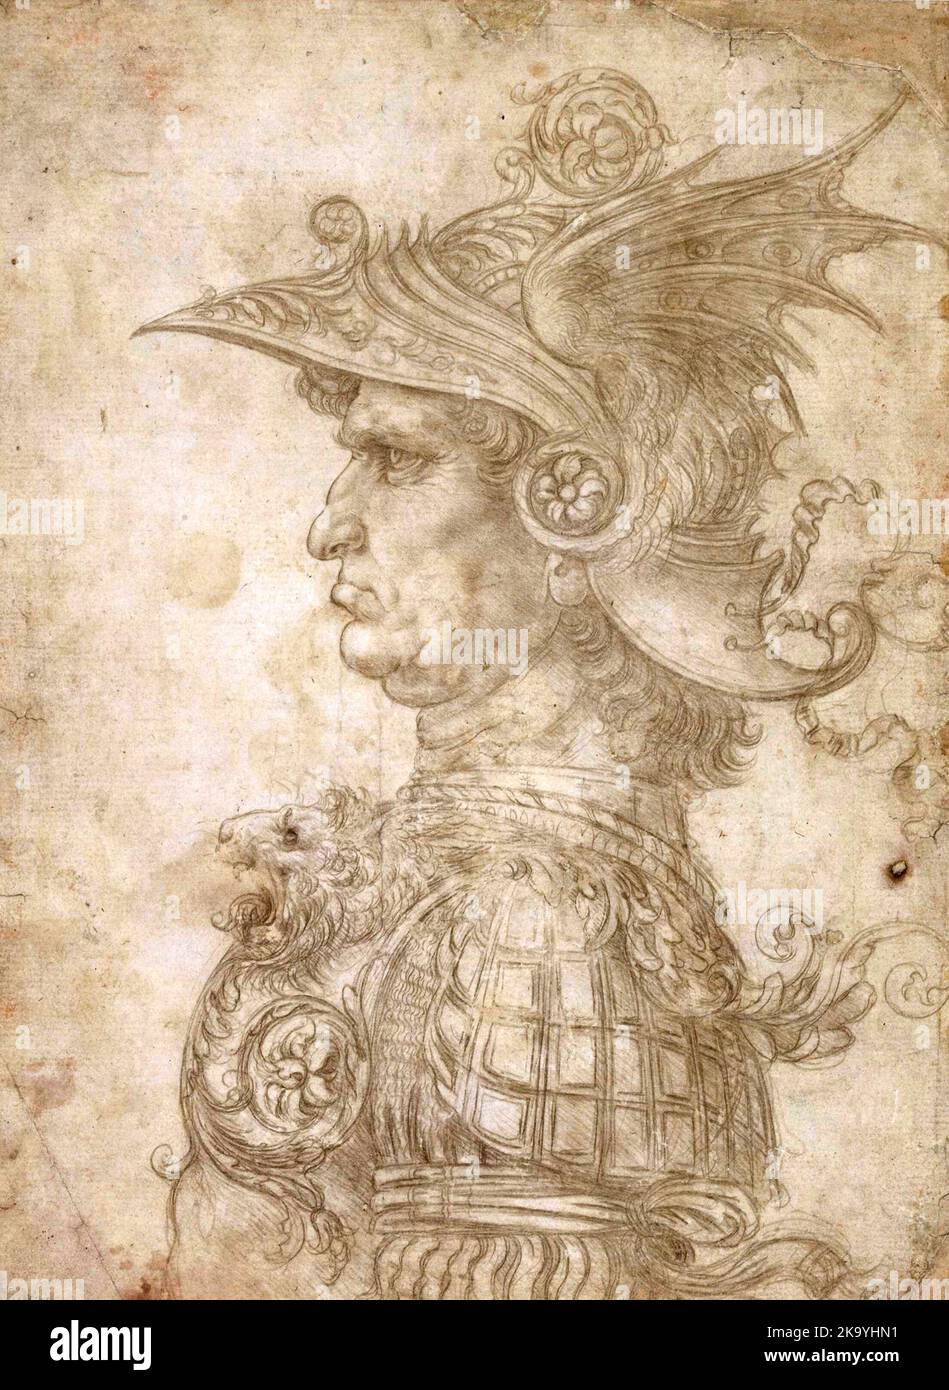 Antiker Krieger im Profil, 1472. Illustration von Leonardo da Vinci Stockfoto